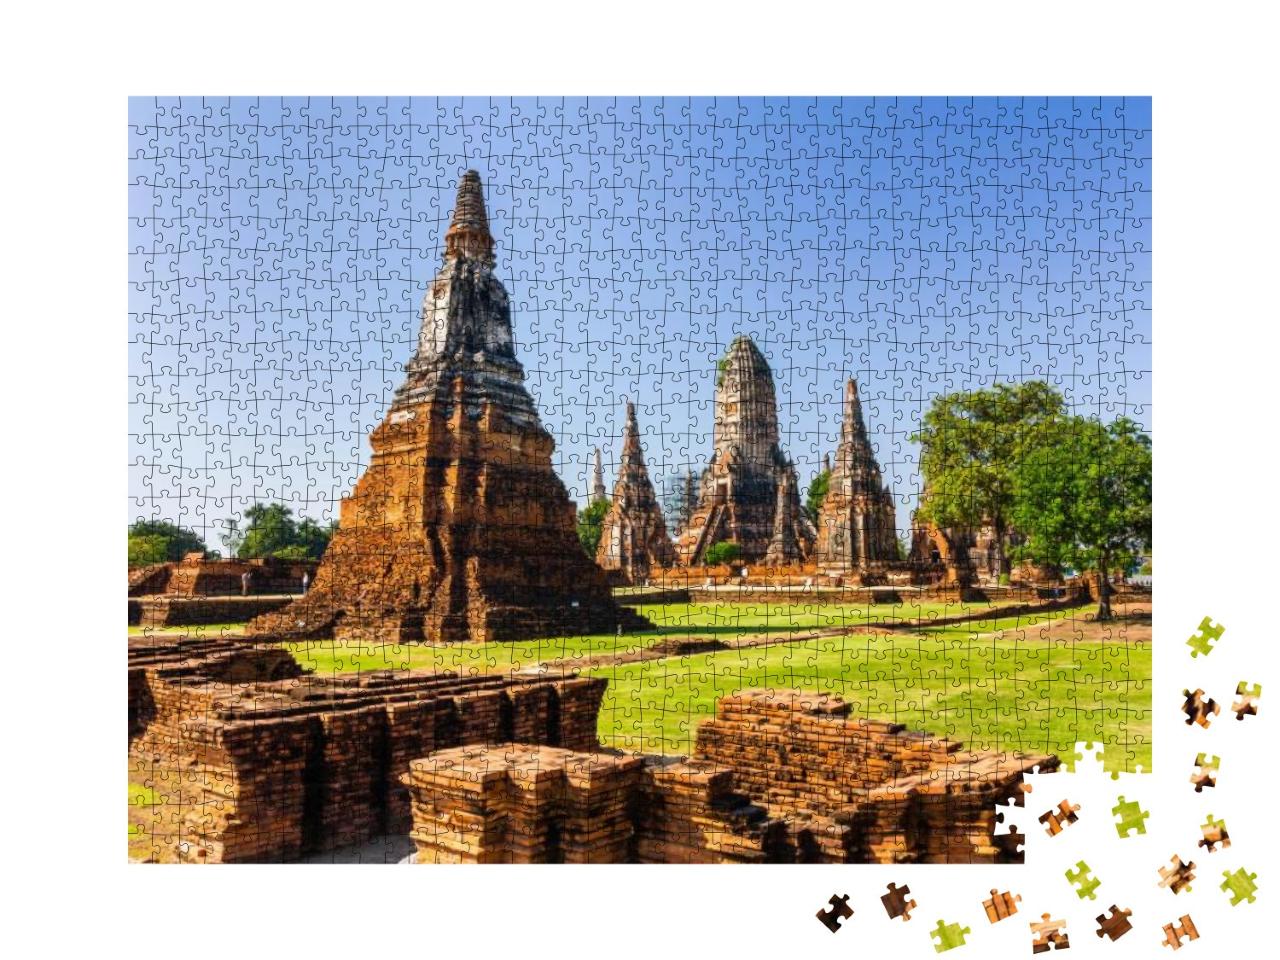 Sukhothai Wat Mahathat Buddha Statues At Wat Mahathat Anc... Jigsaw Puzzle with 1000 pieces